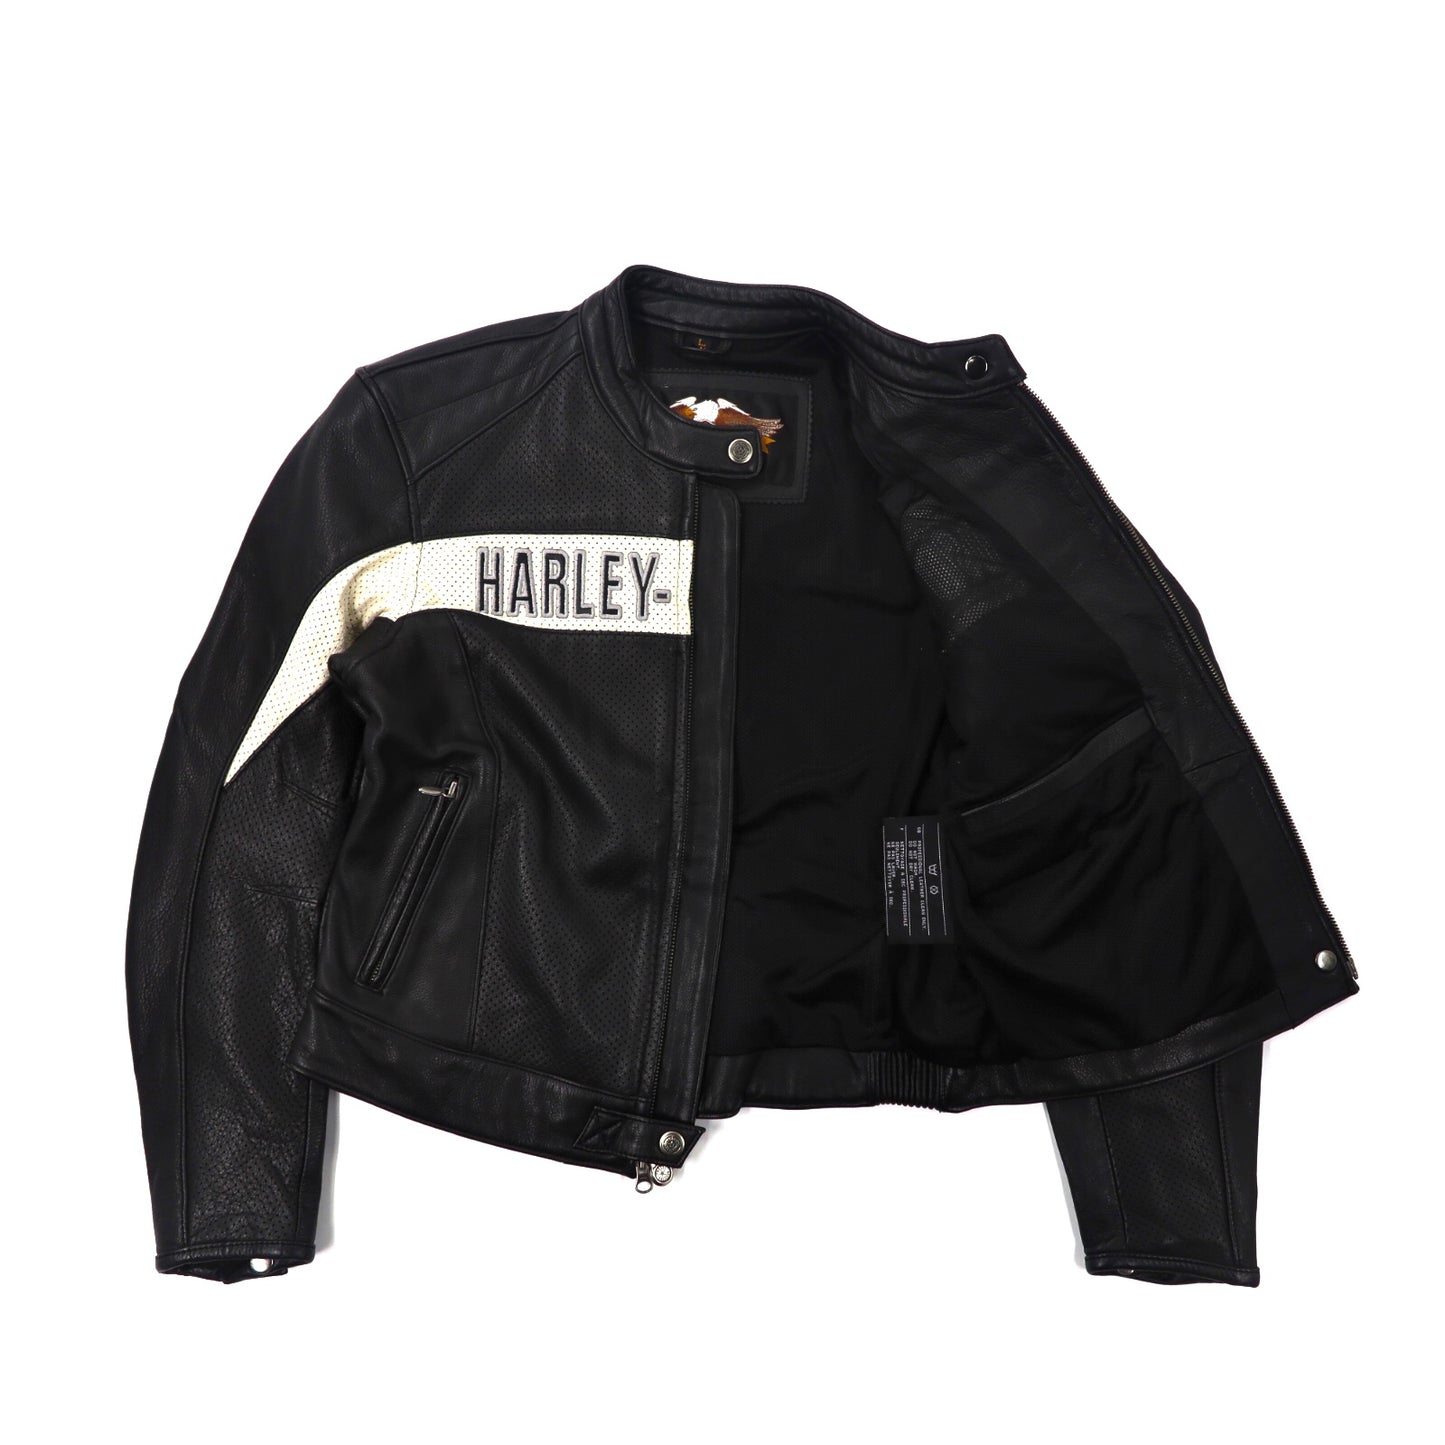 HARLEY DAVIDSON ライダースジャケット L ブラック パンチングレザー